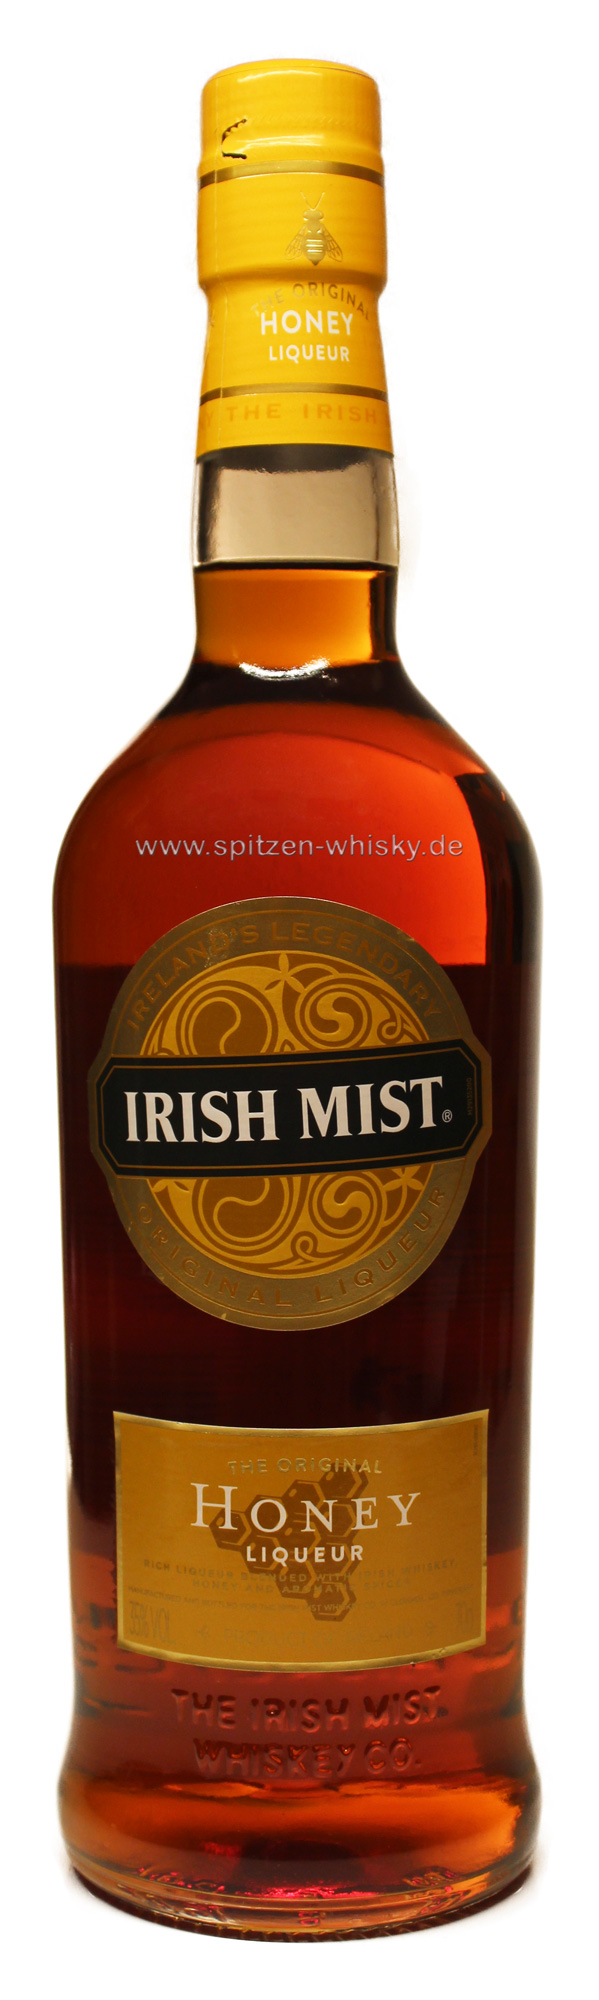 Irish Mist 35% 0,7l | Irish Mist | Irland | Spitzen-Whisky.de der Whisky-Shop  für Single Malt Whisky zu günstigen Preisen